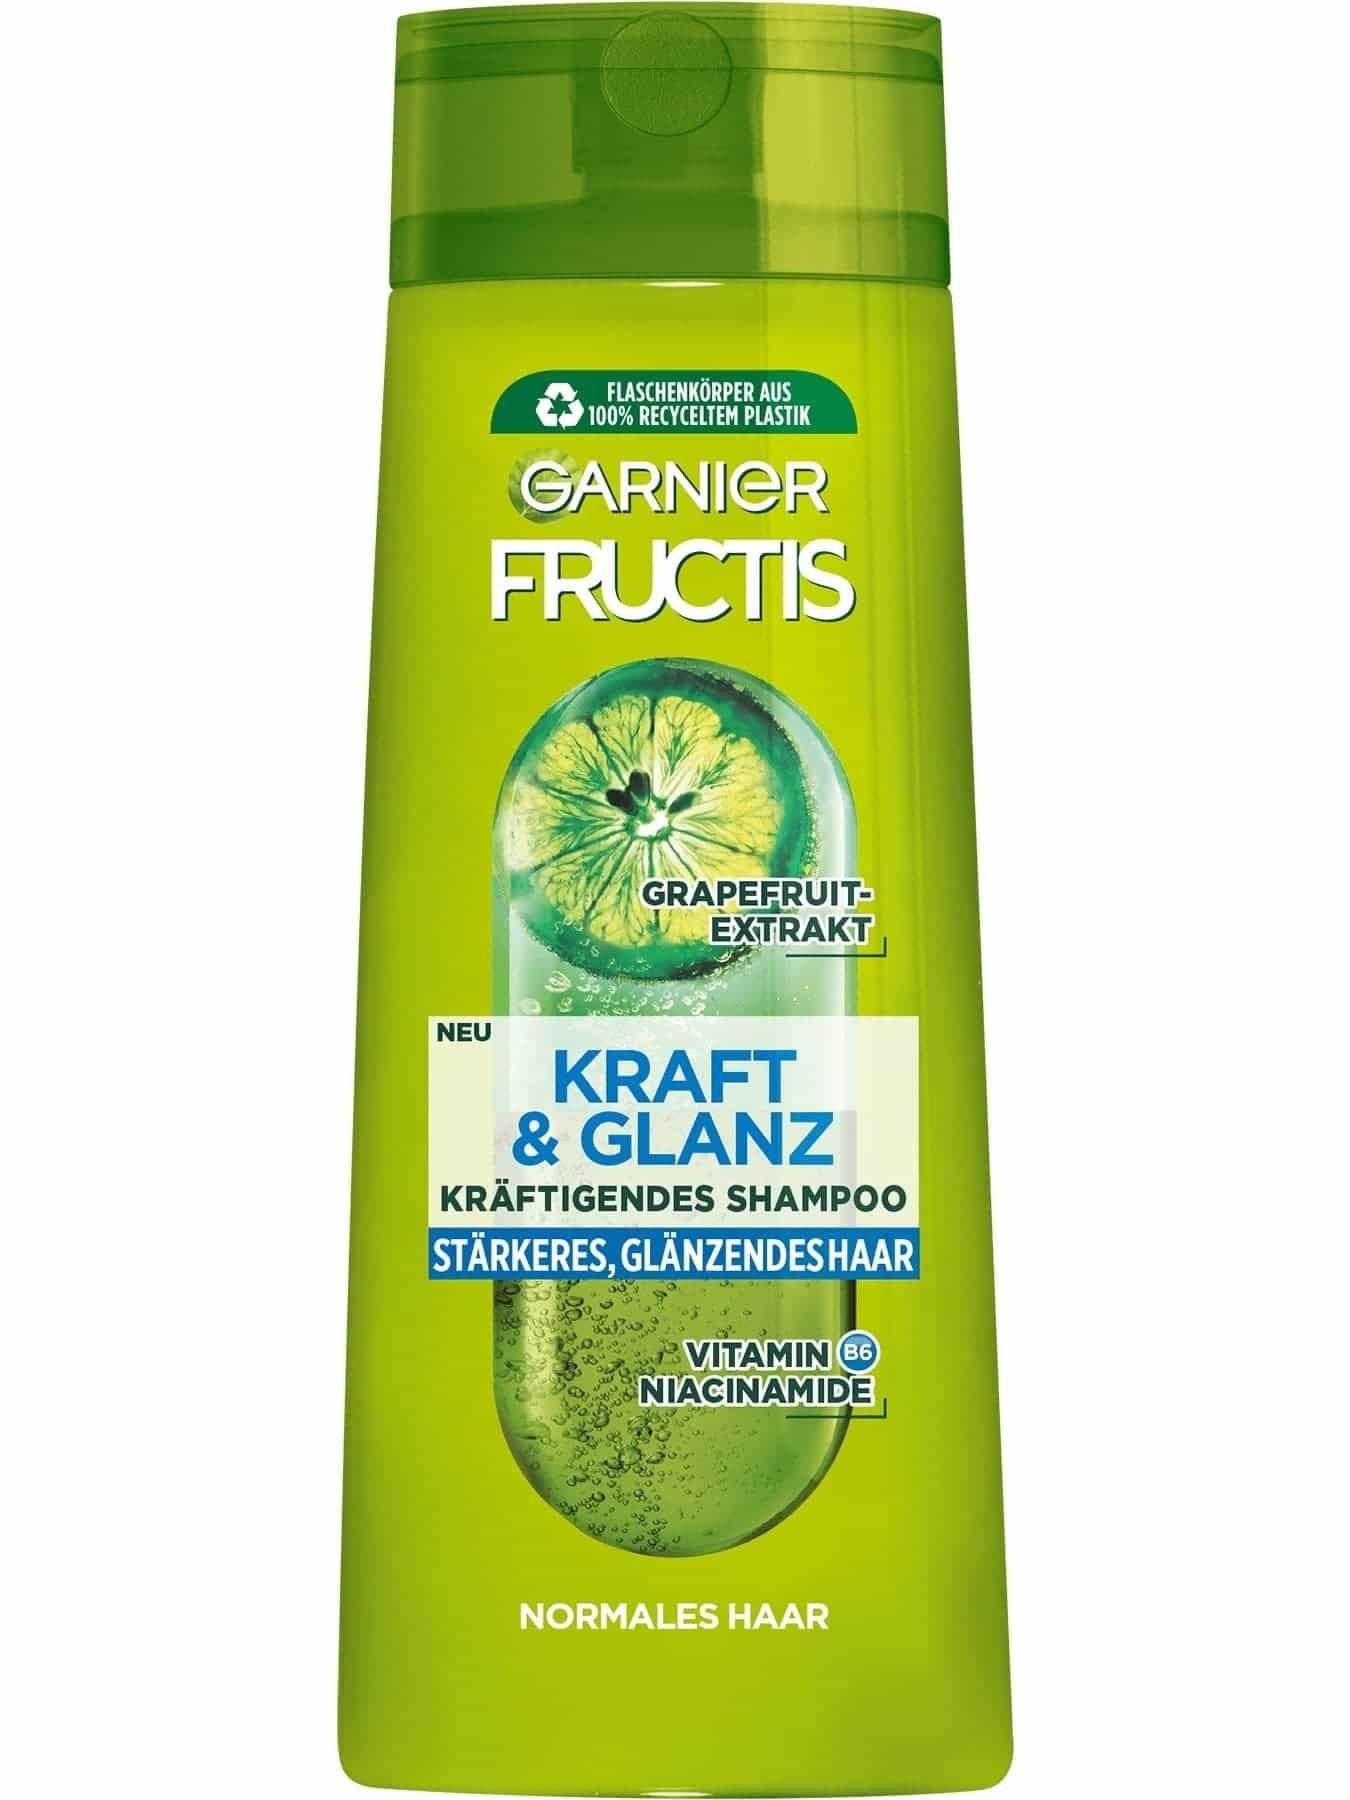 Kraft und Glanz Kräftigendes Shampoo – Garnier